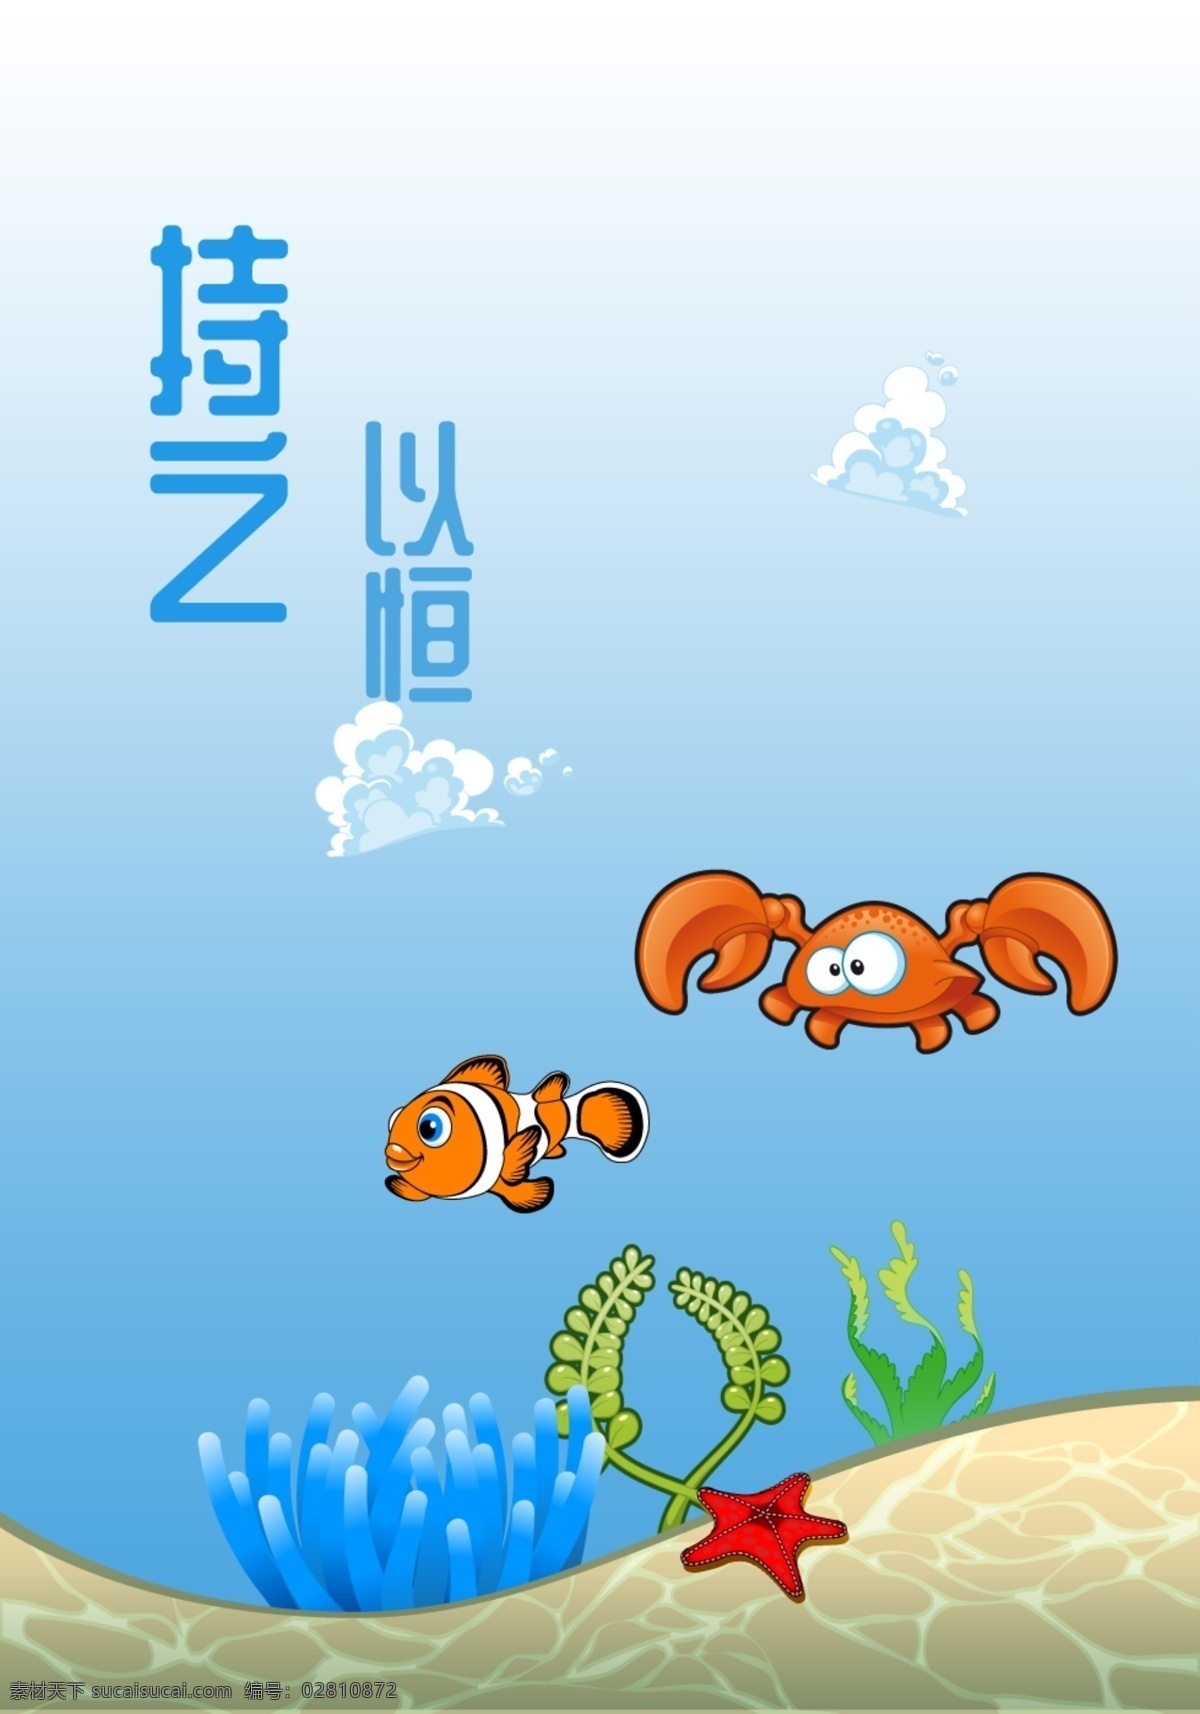 海底世界 小丑鱼 海洋生物 持之以恒 螃蟹 卡通画 海景 动漫动画